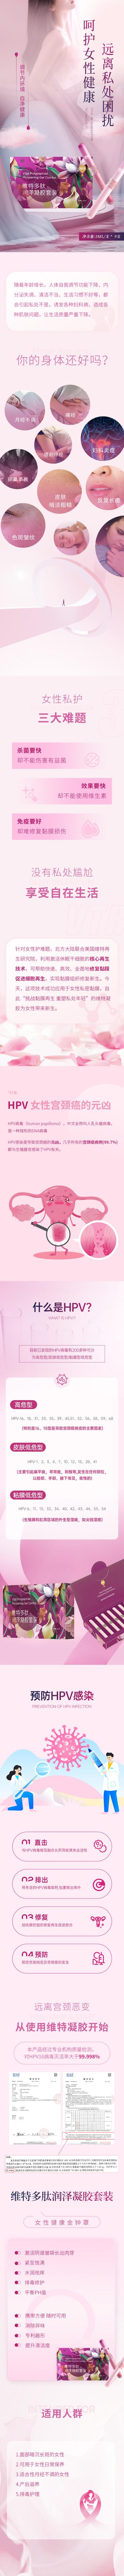 南门网 电商详情页 淘宝详情页 女性 私处护理 凝胶 HPV 高端